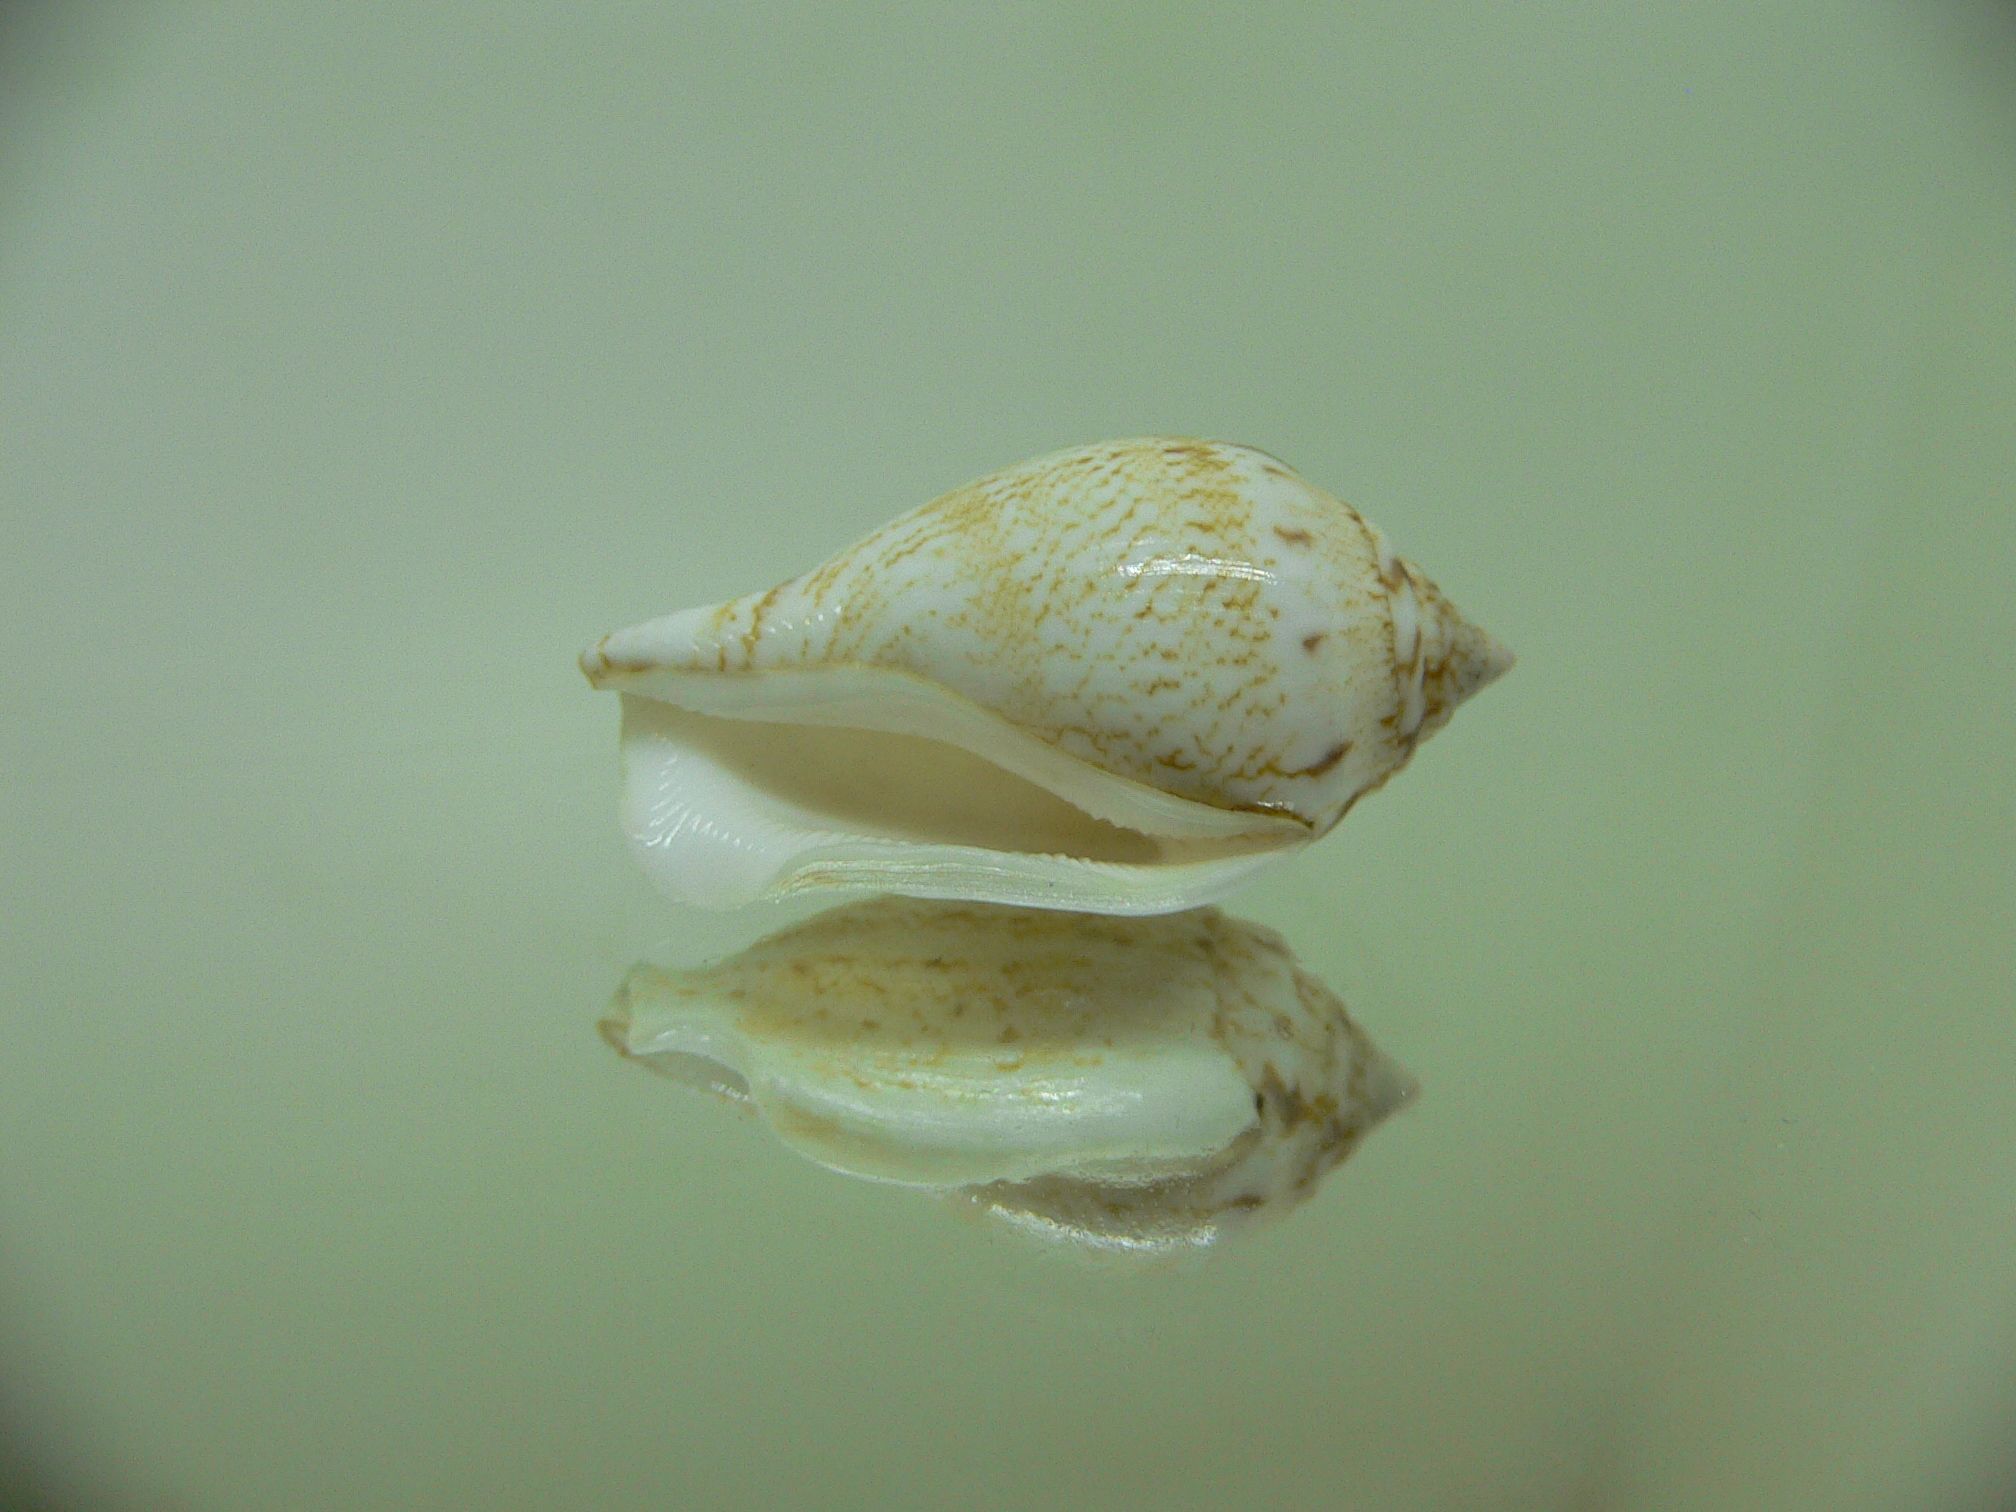 Canarium maculatum depauperatum (var.) ALBINO